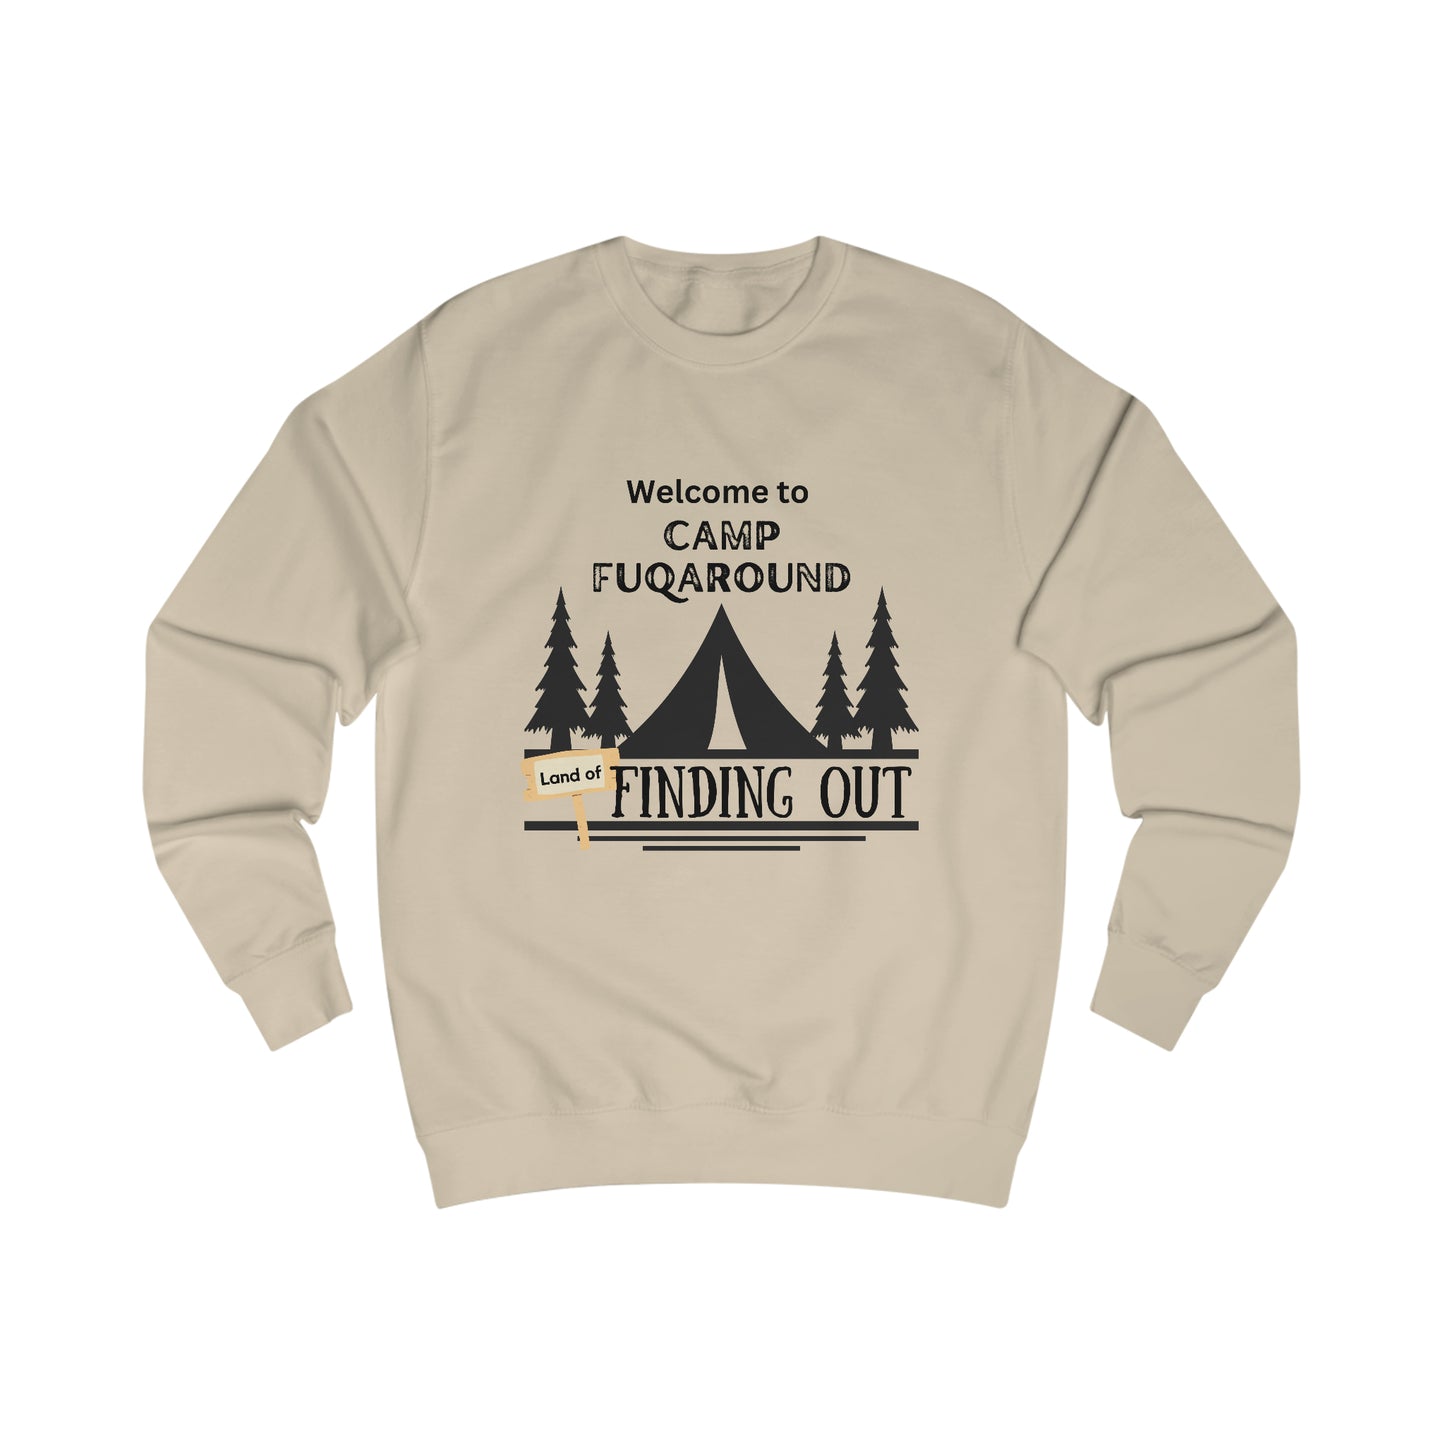 Camp "f*ck around" sweatshirt - Sassy quote shirt - bestie birthday gift